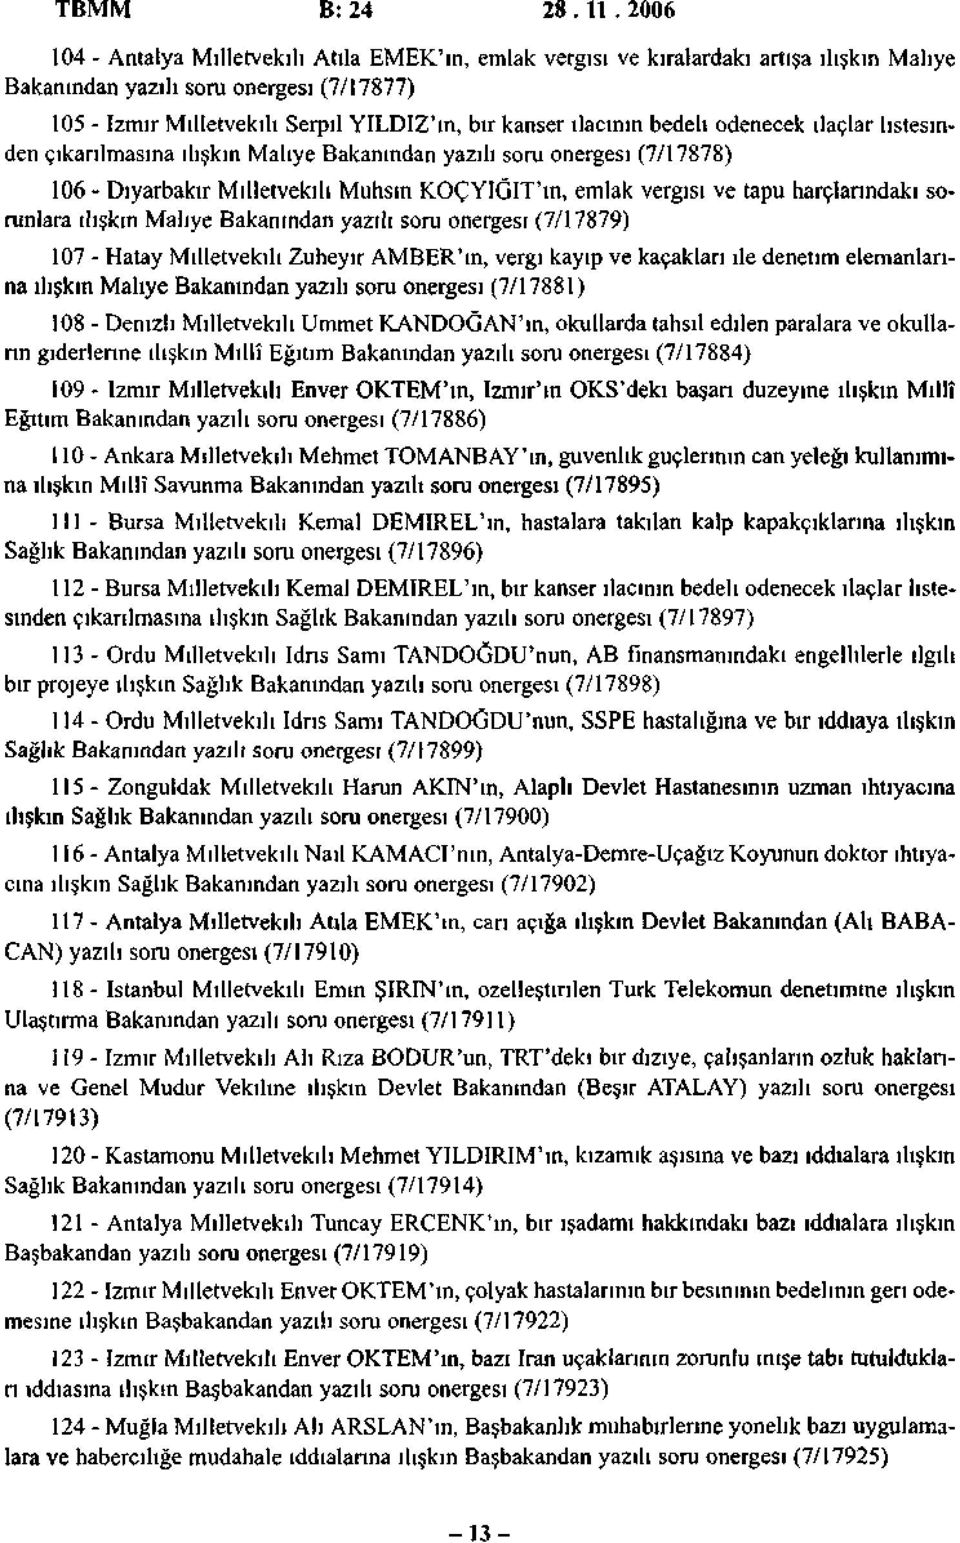 ilacının bedeli ödenecek ilaçlar listesinden çıkarılmasına ilişkin Maliye Bakanından yazılı soru önergesi (7/17878) 106 - Diyarbakır Milletvekili Muhsin KOÇYIGIT'ın, emlak vergisi ve tapu